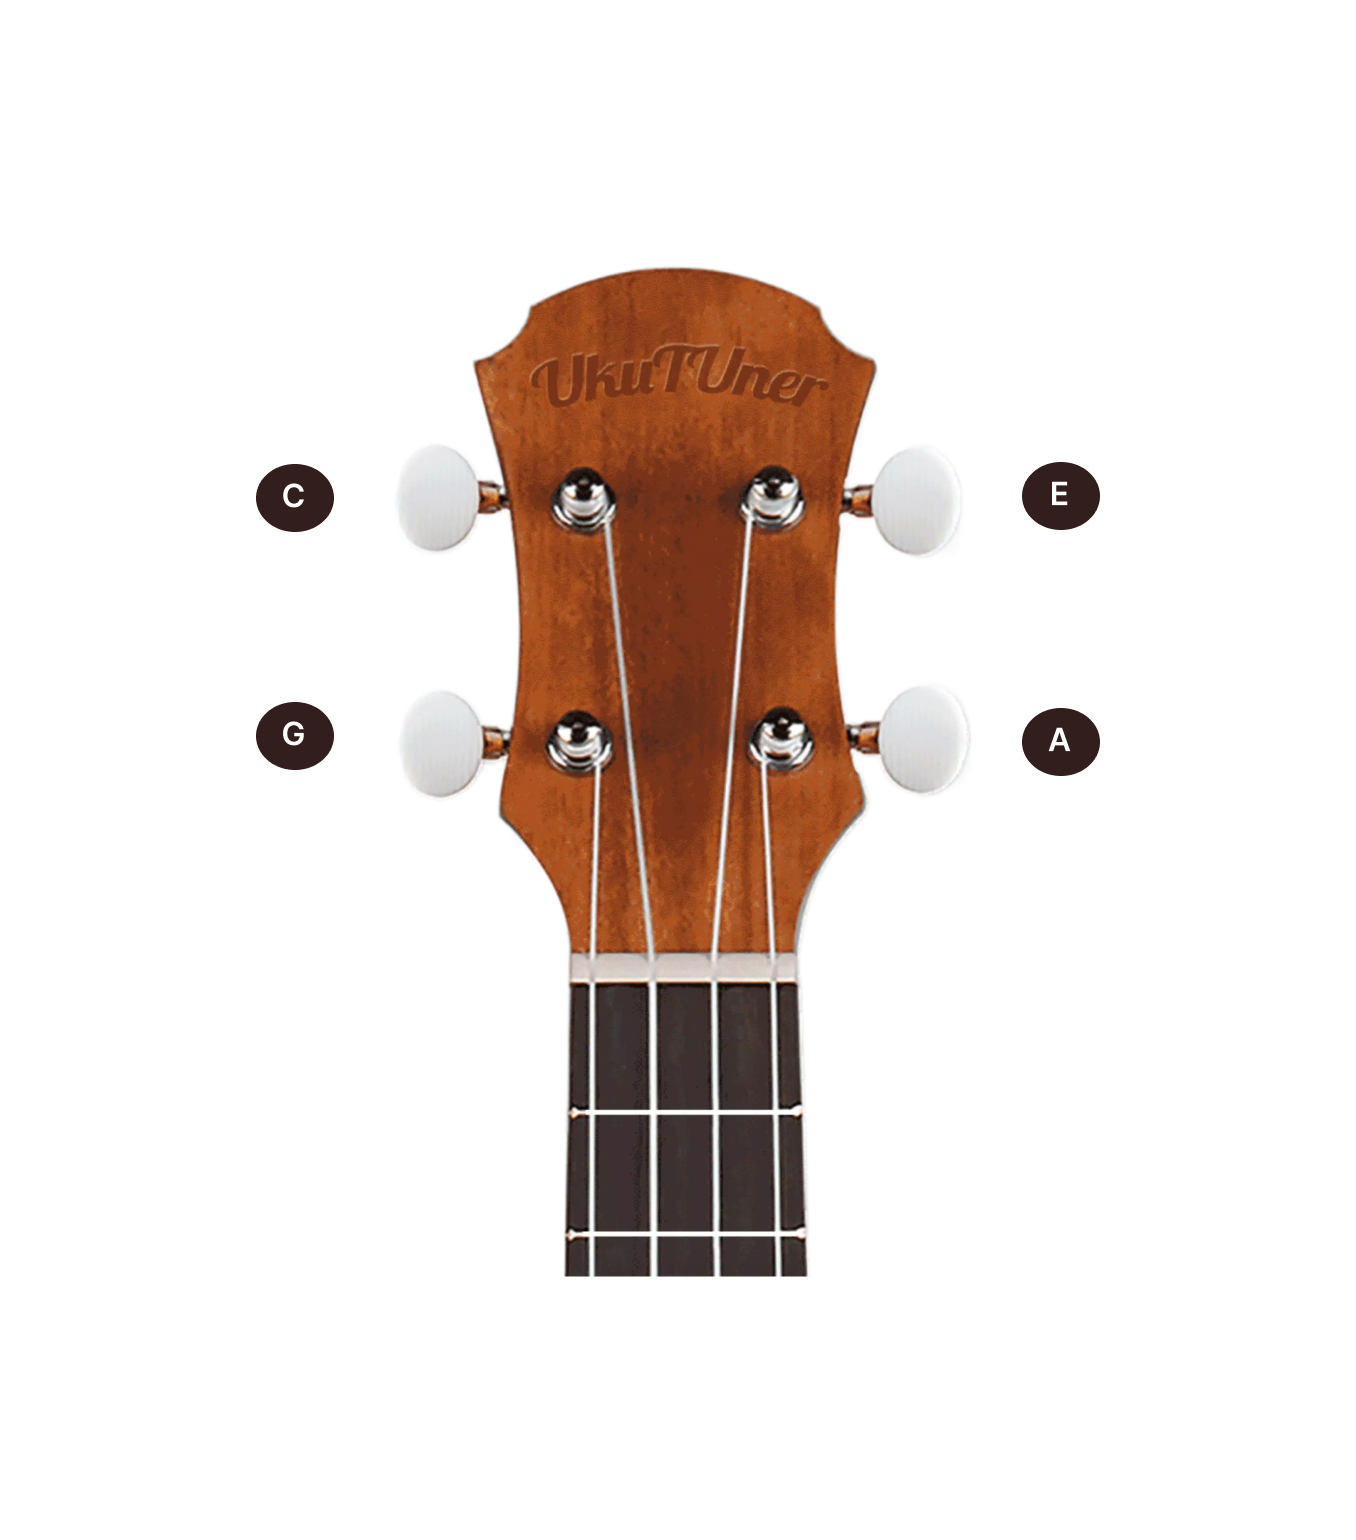 ukulele image